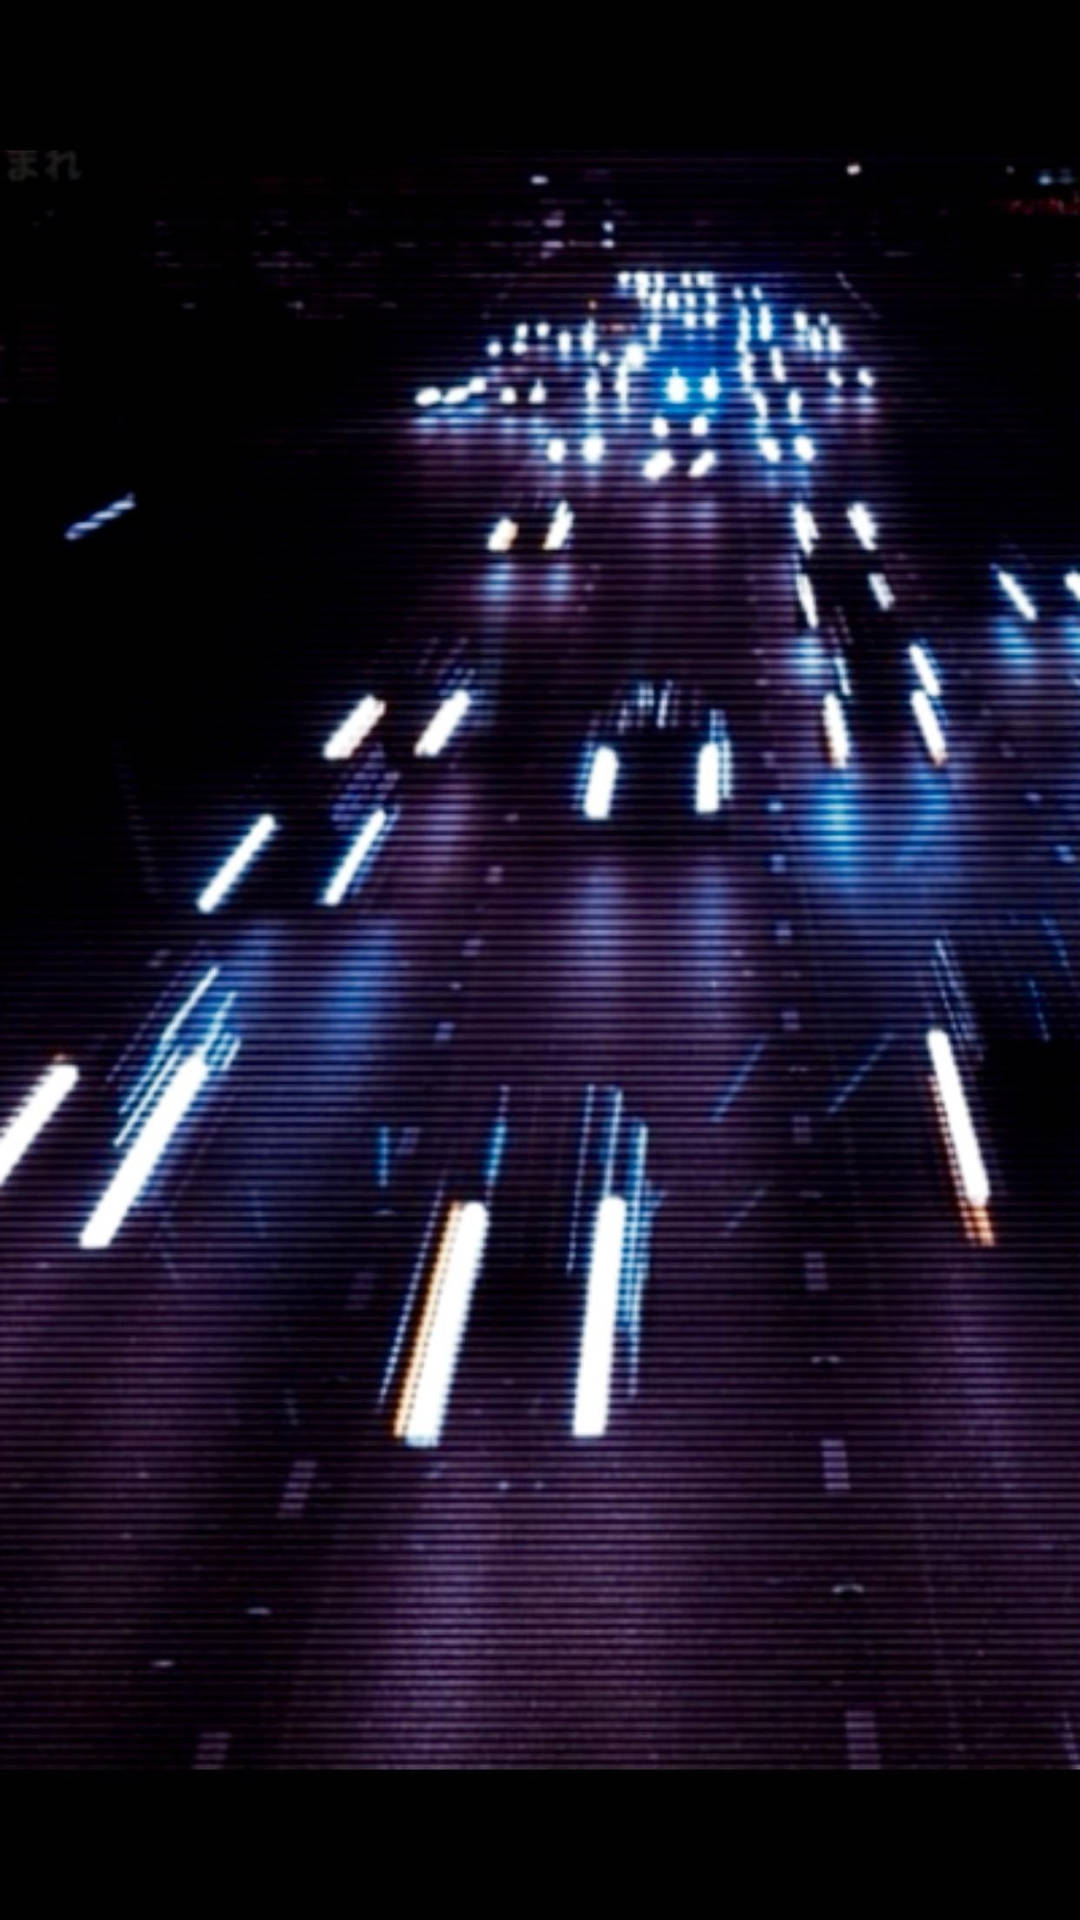 Blurrede biler på en travl vej mørk grunge æstetik Wallpaper